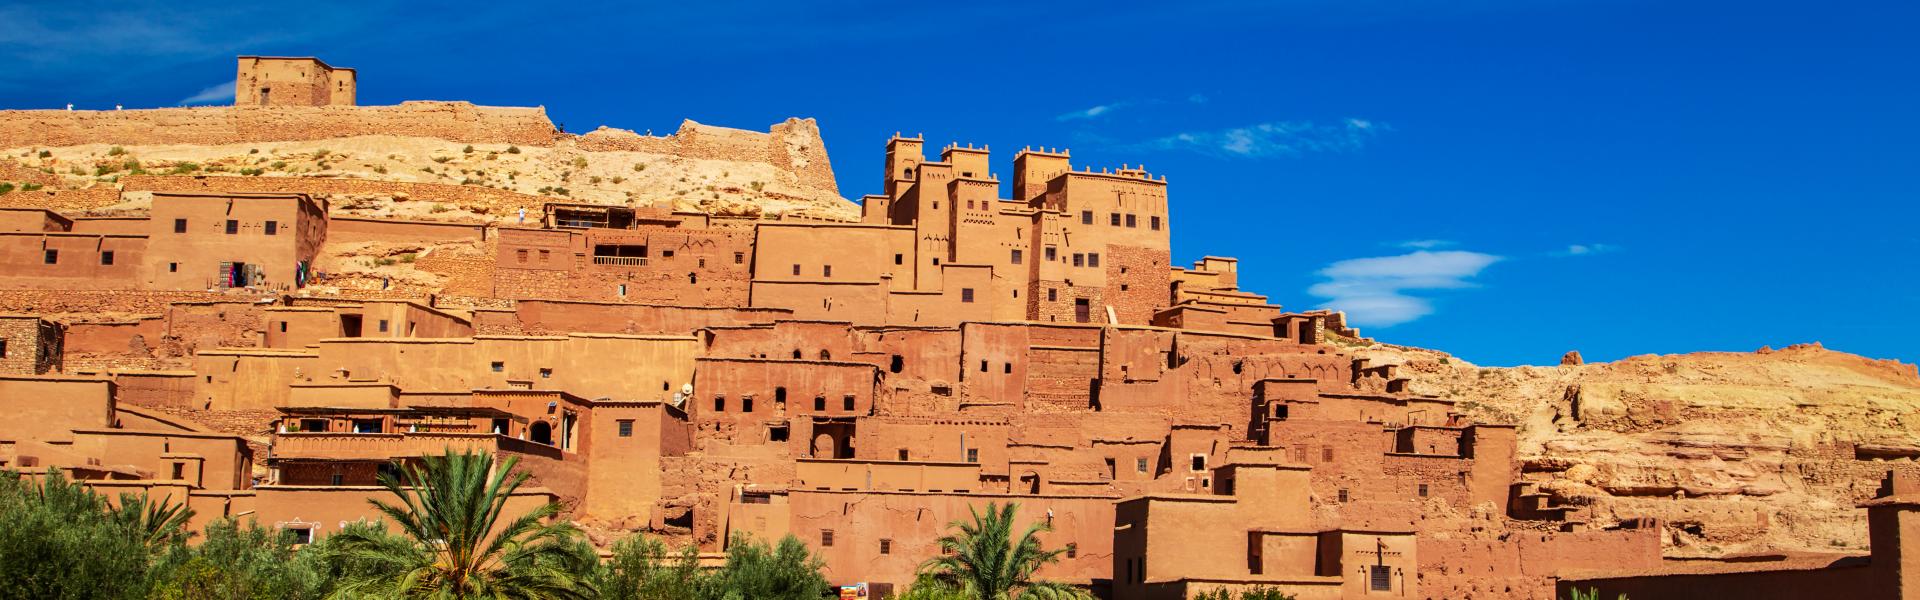 Ferienwohnungen & Ferienhäuser für Urlaub in Marrakesch-Tensift-El Haouz - Casamundo